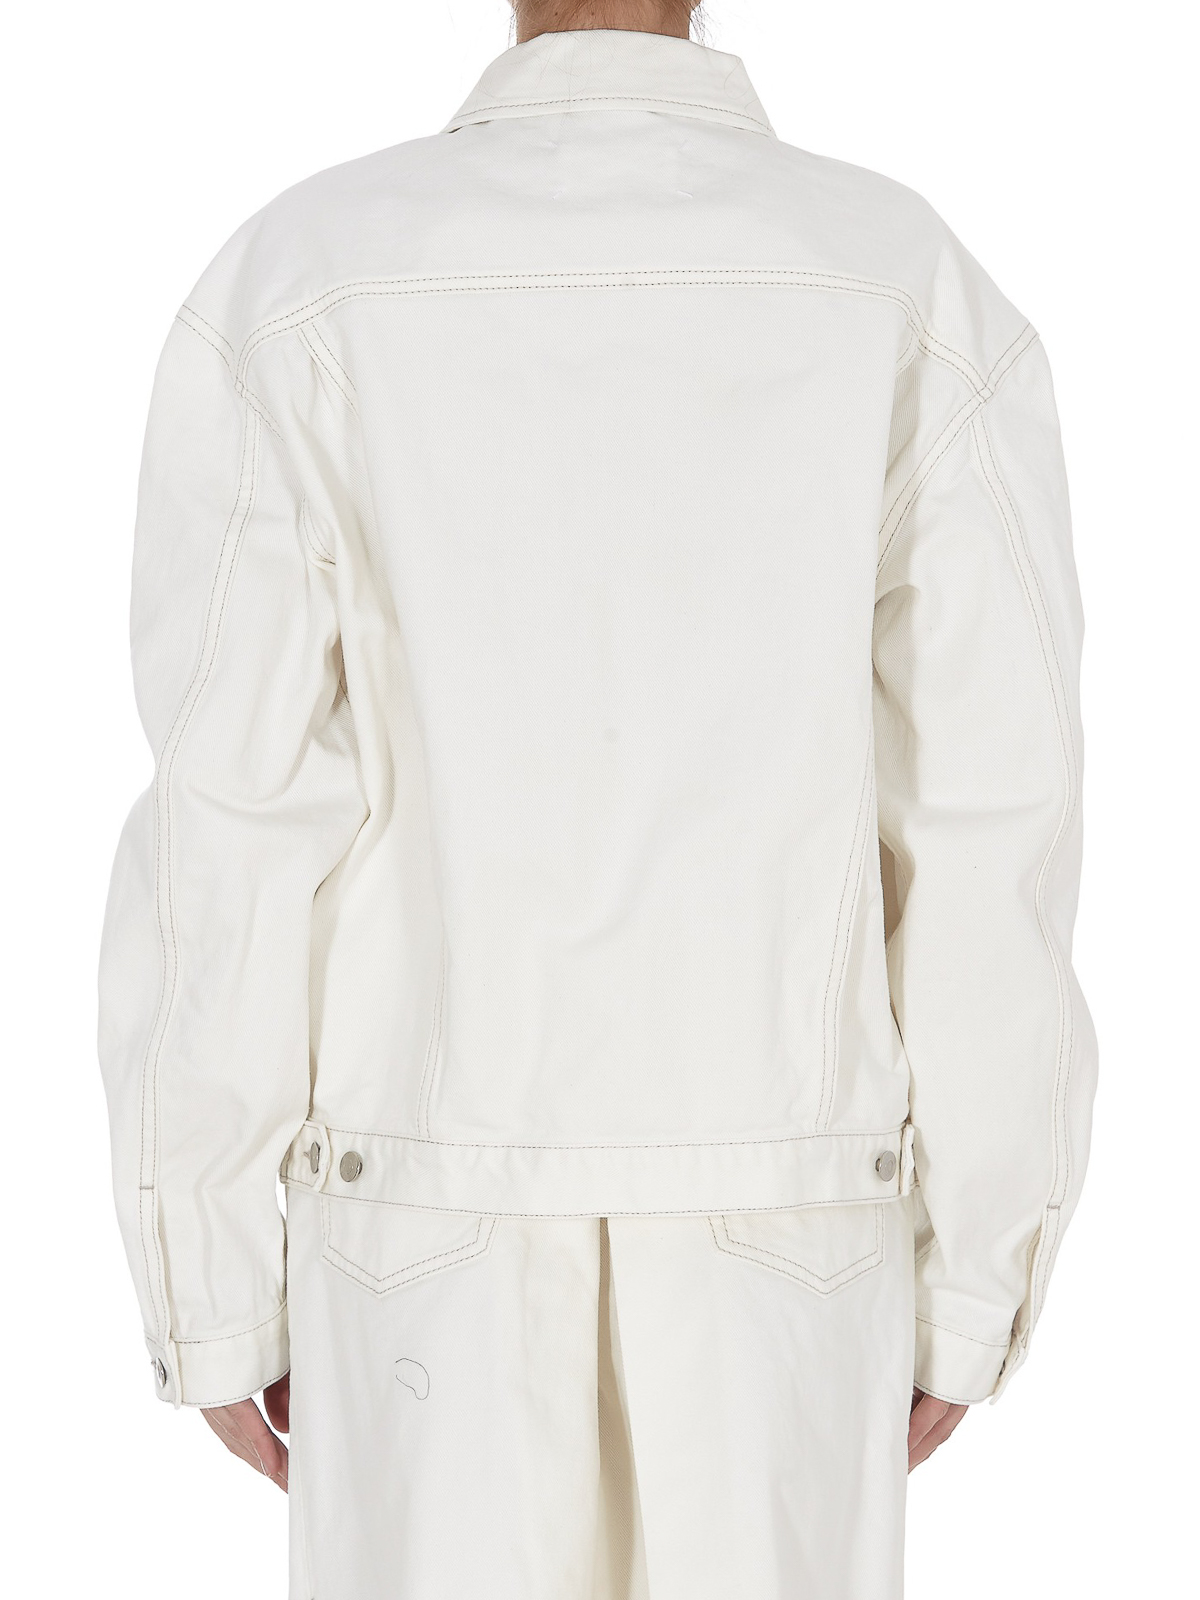 Denim jacket Maison Margiela - White denim jacket - S51AM0428S30642101